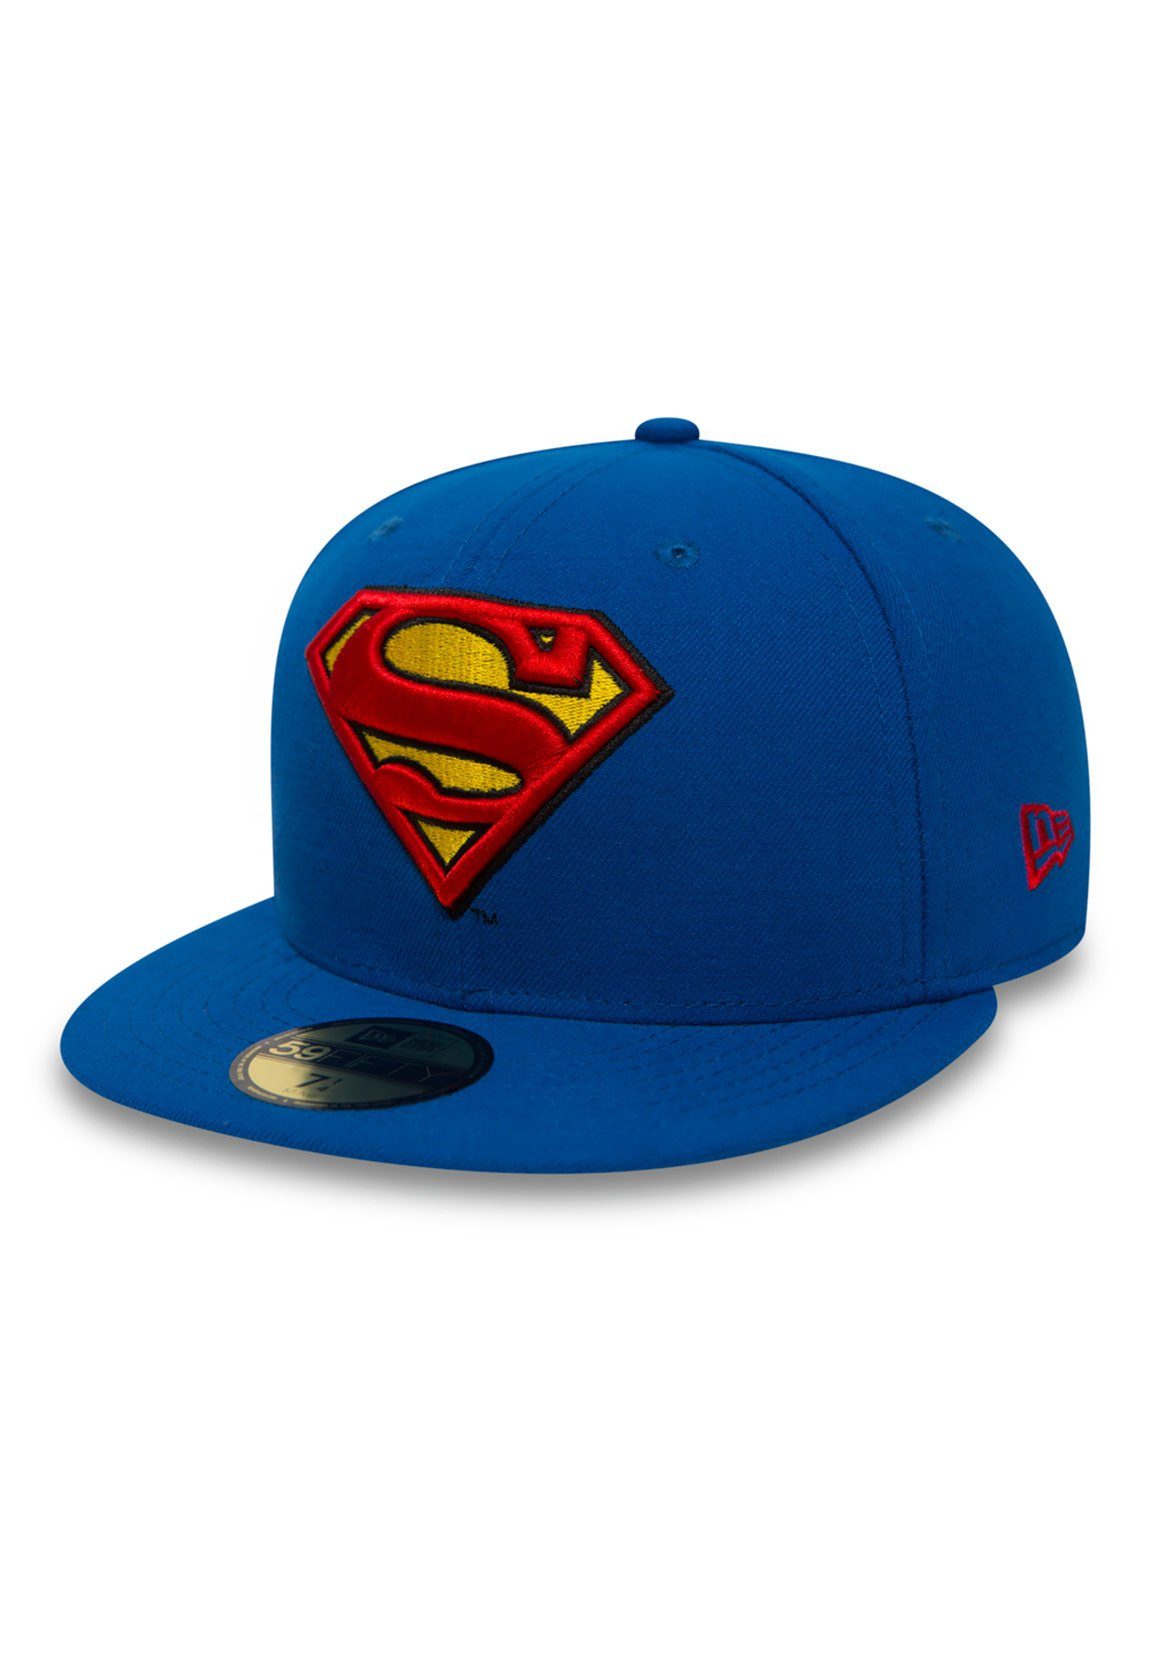 New Era Baseball Cap New Era DC Comics 59Fiftys Cap - SUPERMAN - Blue